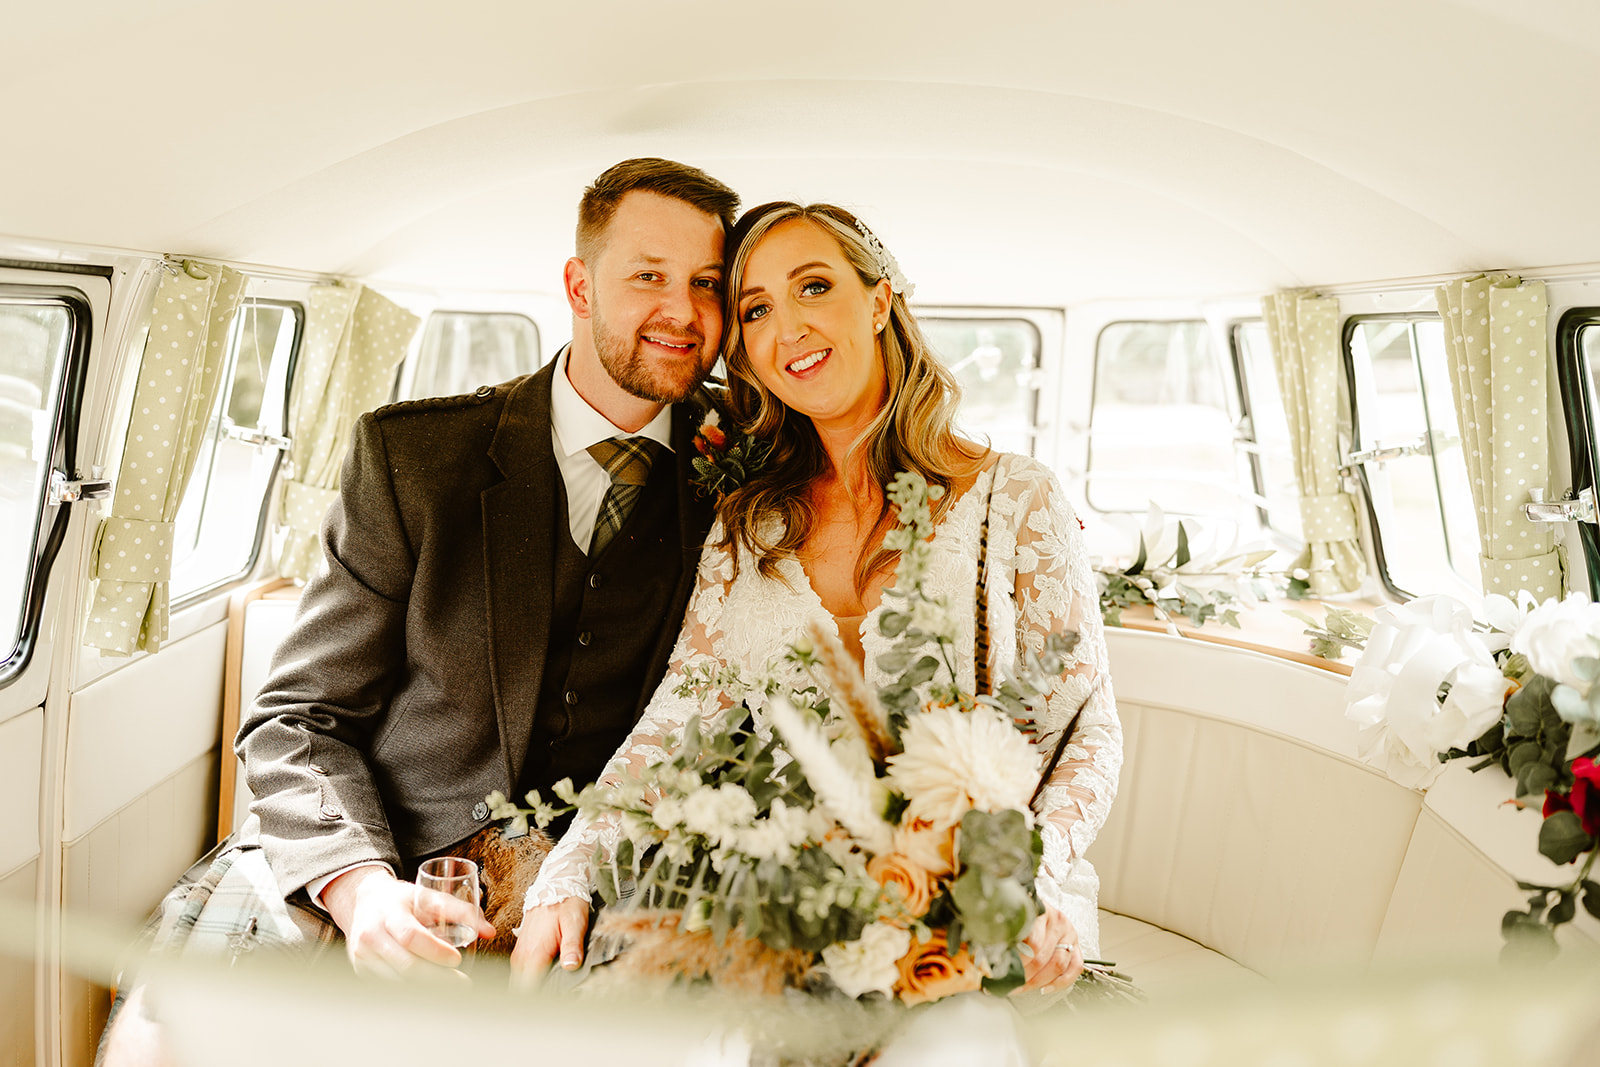 Newlywed couple siting in vintage camper van outside their wedding venue Aswanley